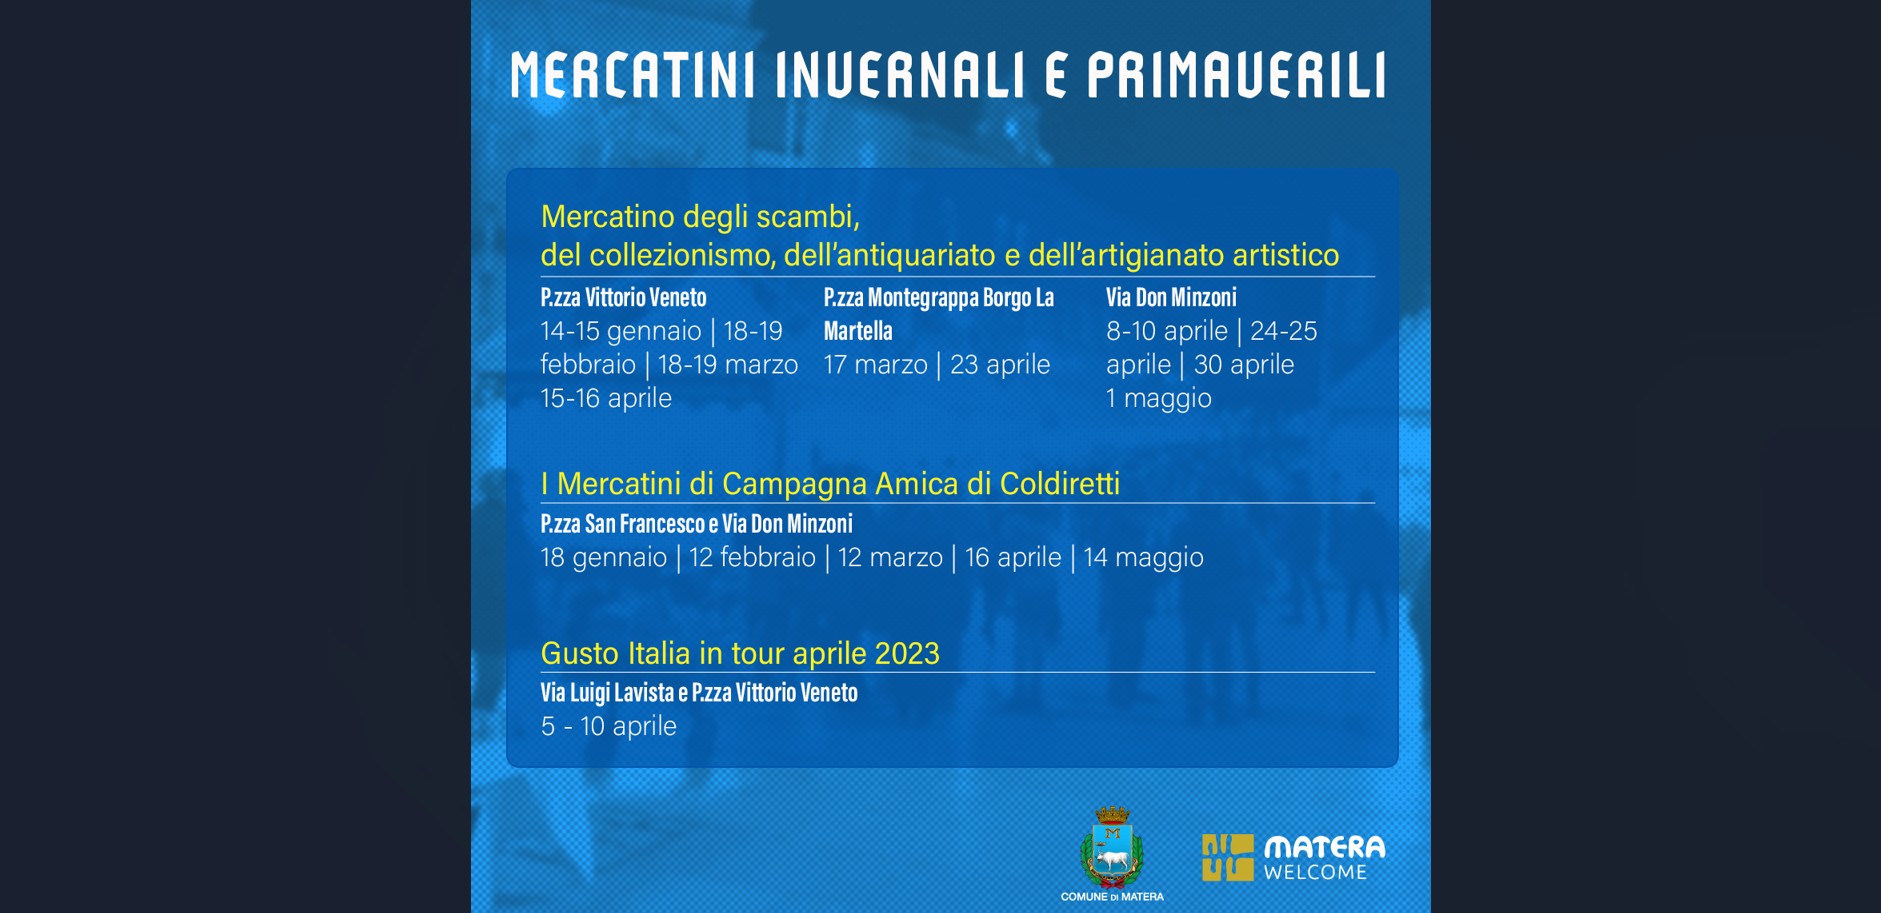 Mercatini invernali e primaverili a Matera: definito in largo anticipo il calendario delle esposizioni